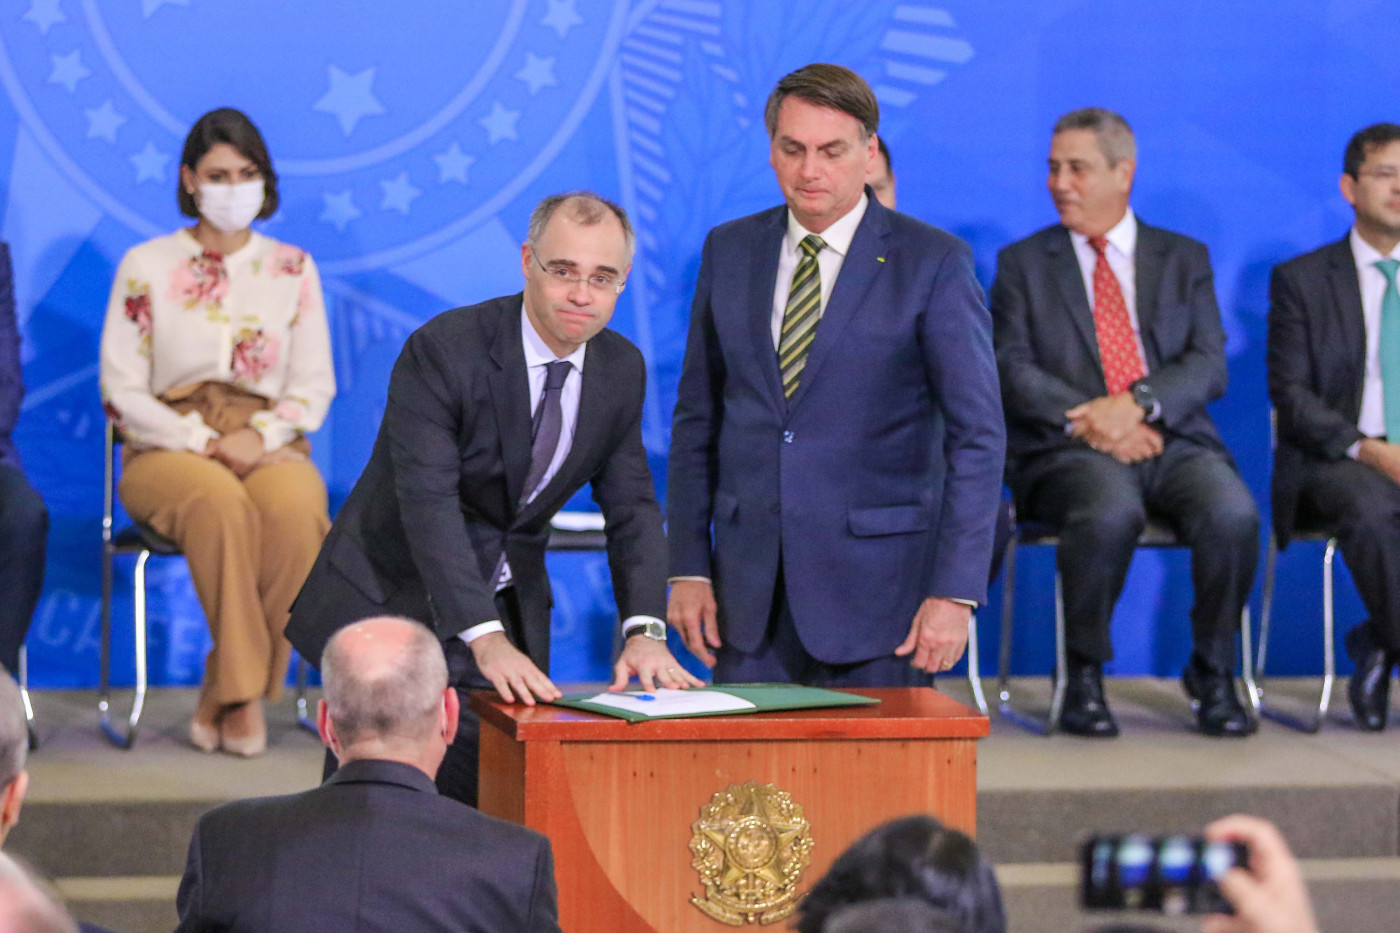 Ministro assina documento ao lado do presidente da República